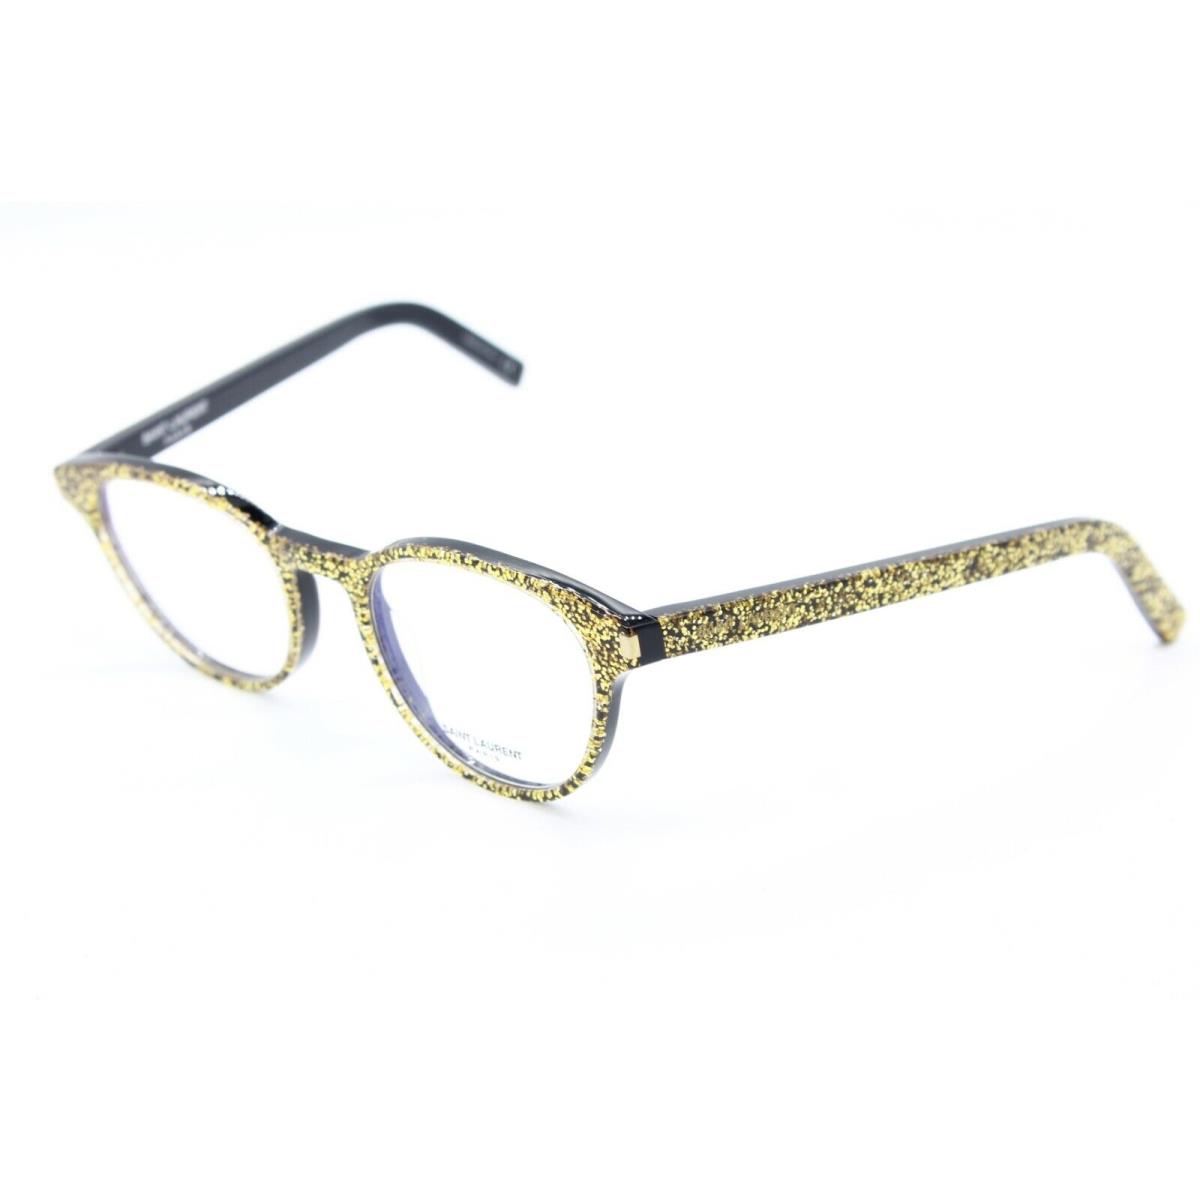 Saint Laurent SL 10 010 Gold Frames RX Eyeglasses SL10 48-19